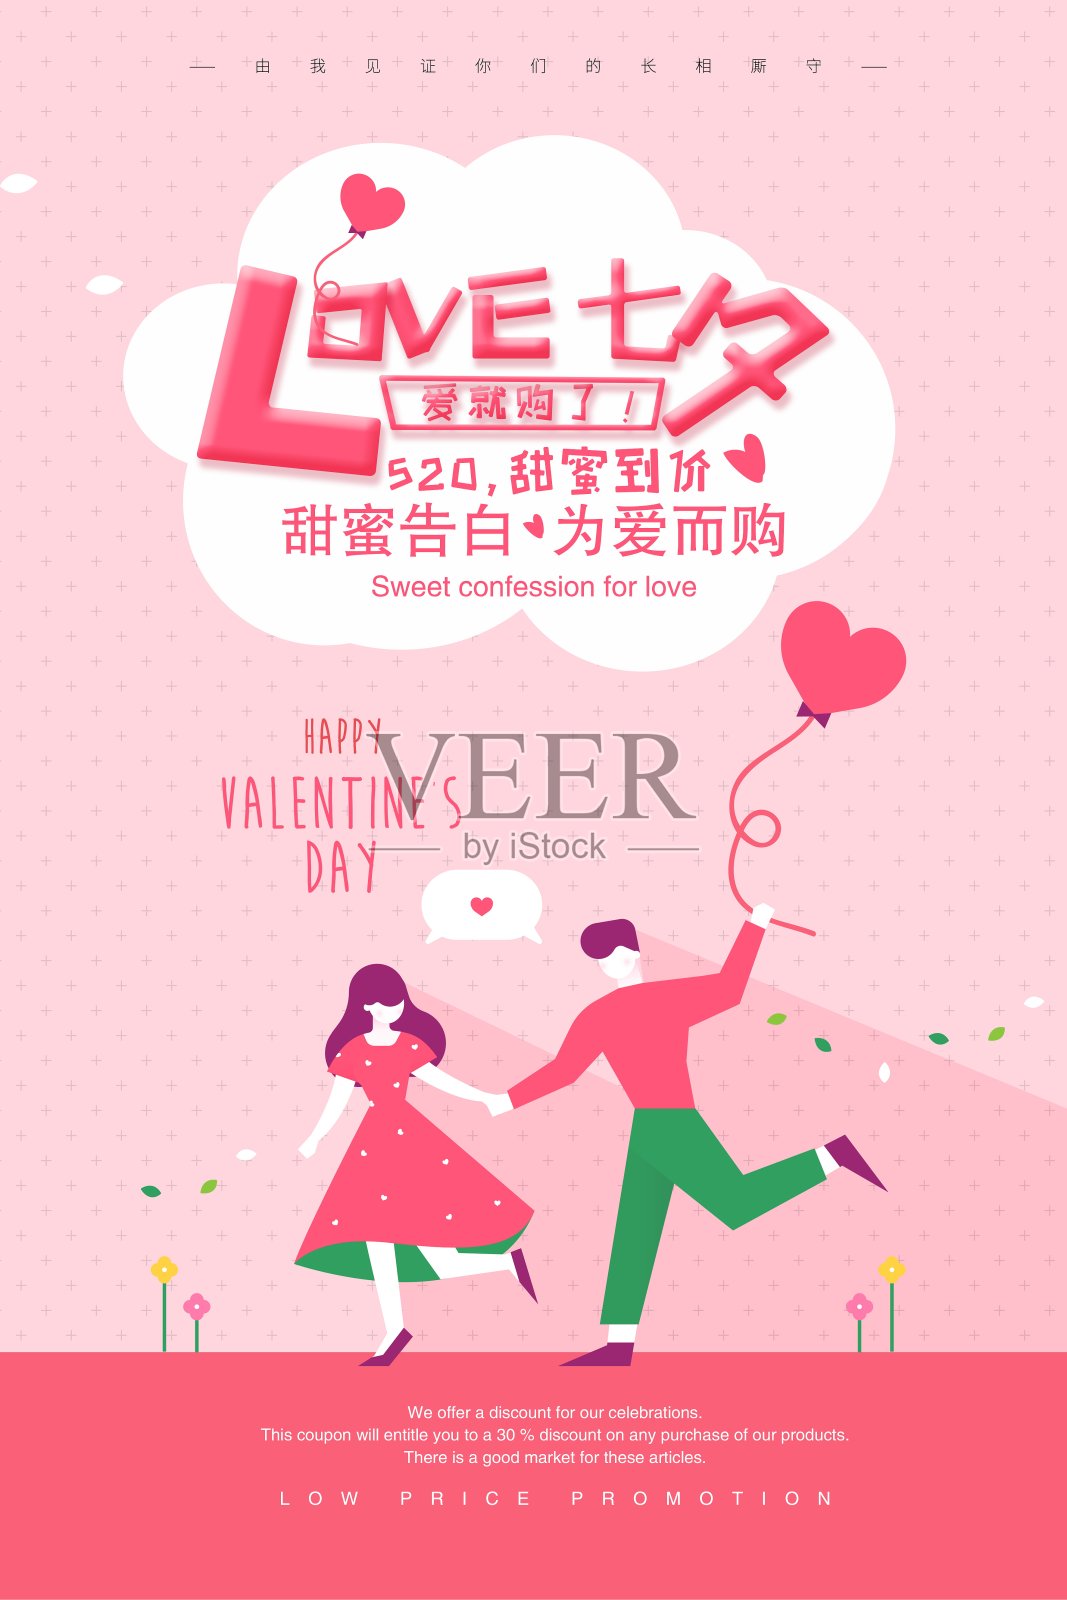 简约LOVE七夕情人节促销海报设计模板素材